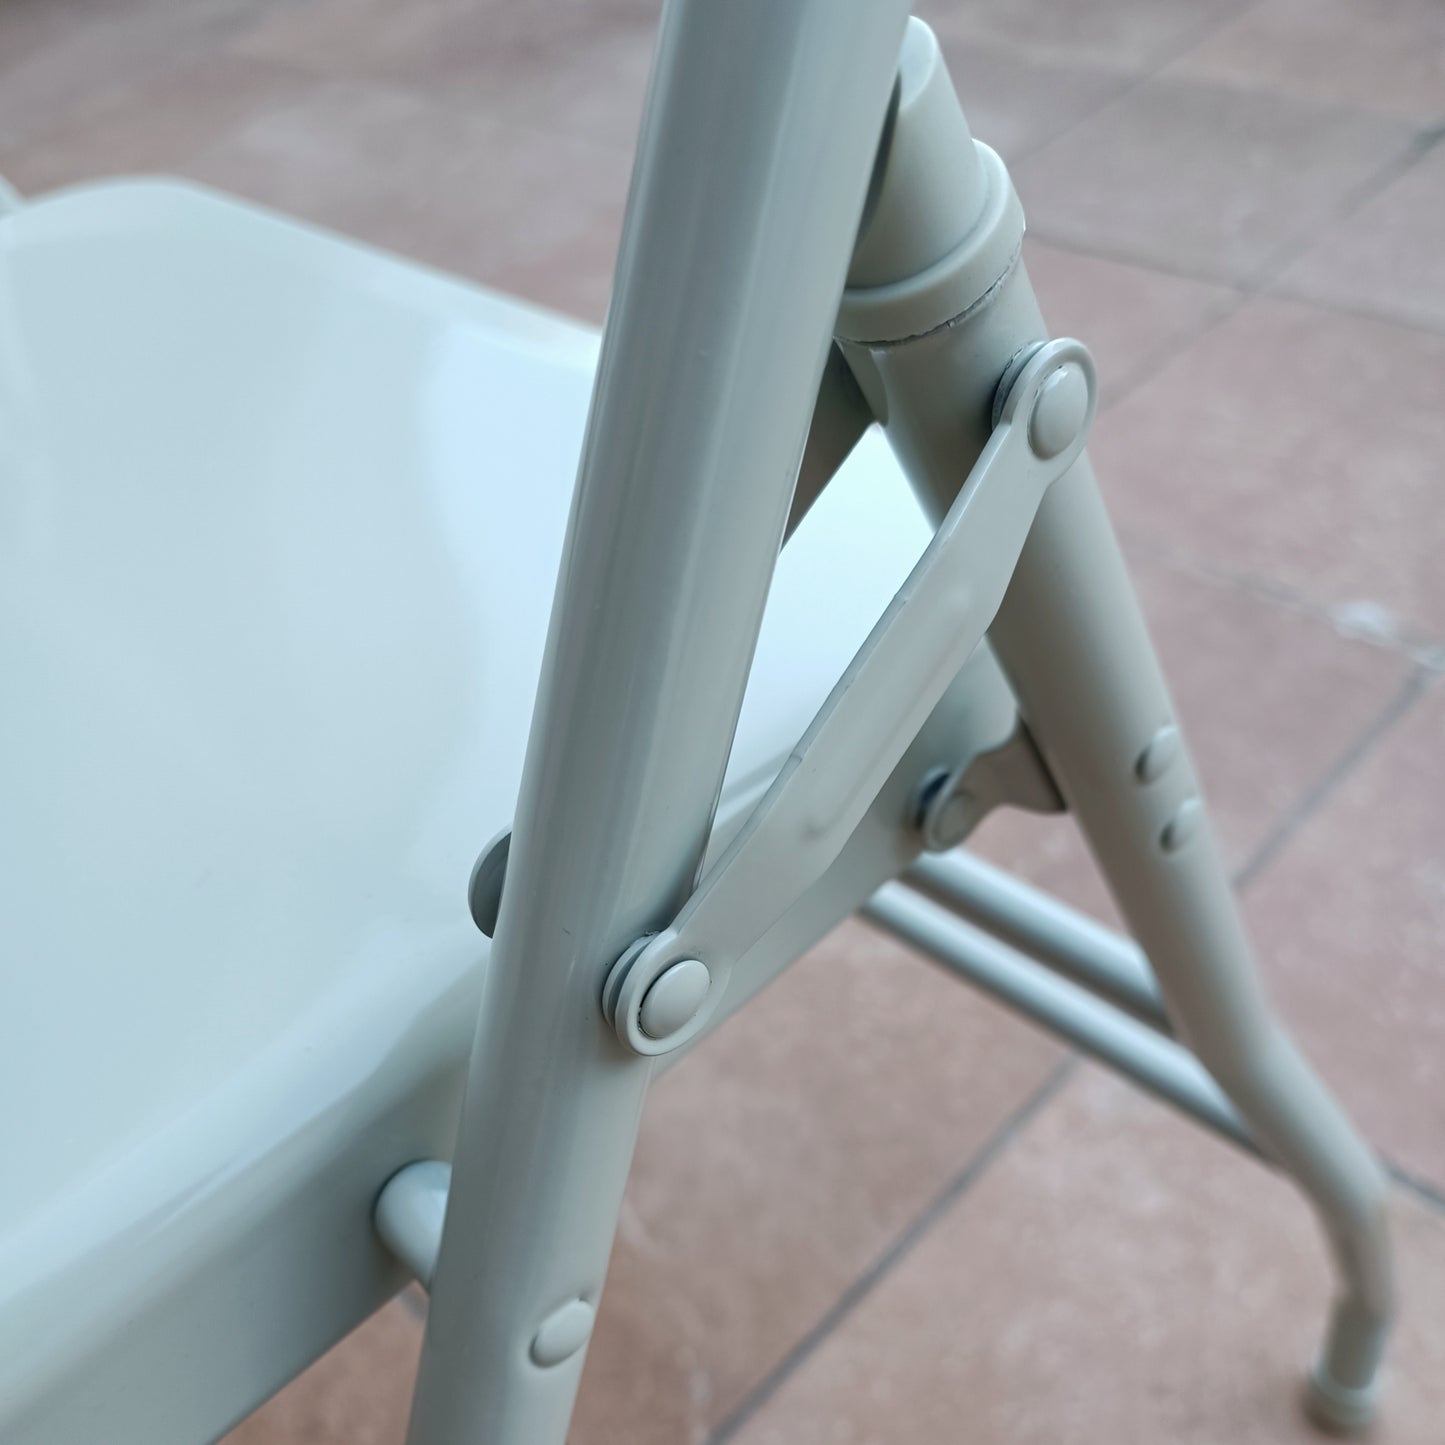 Hoher Yoga-Stuhl – entworfen für längere Beine und Oberkörper